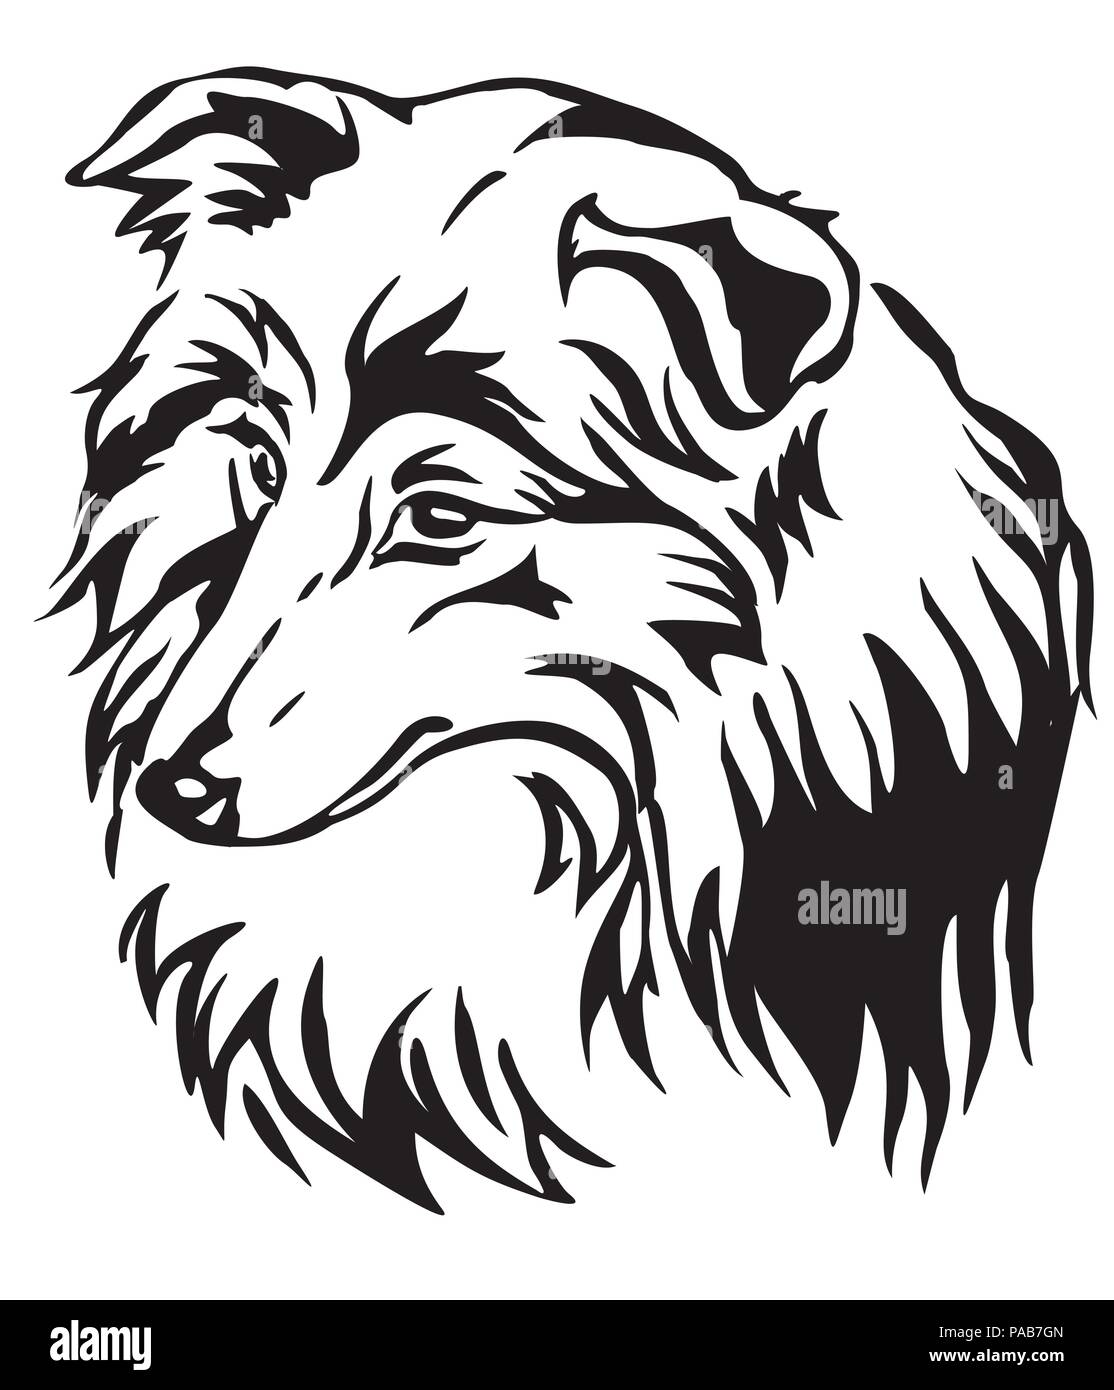 Dekorative Portrait von Hund Shetland Sheepdog (Sheltie), Vektor isoliert Abbildung in schwarz auf weißem Hintergrund Stock Vektor